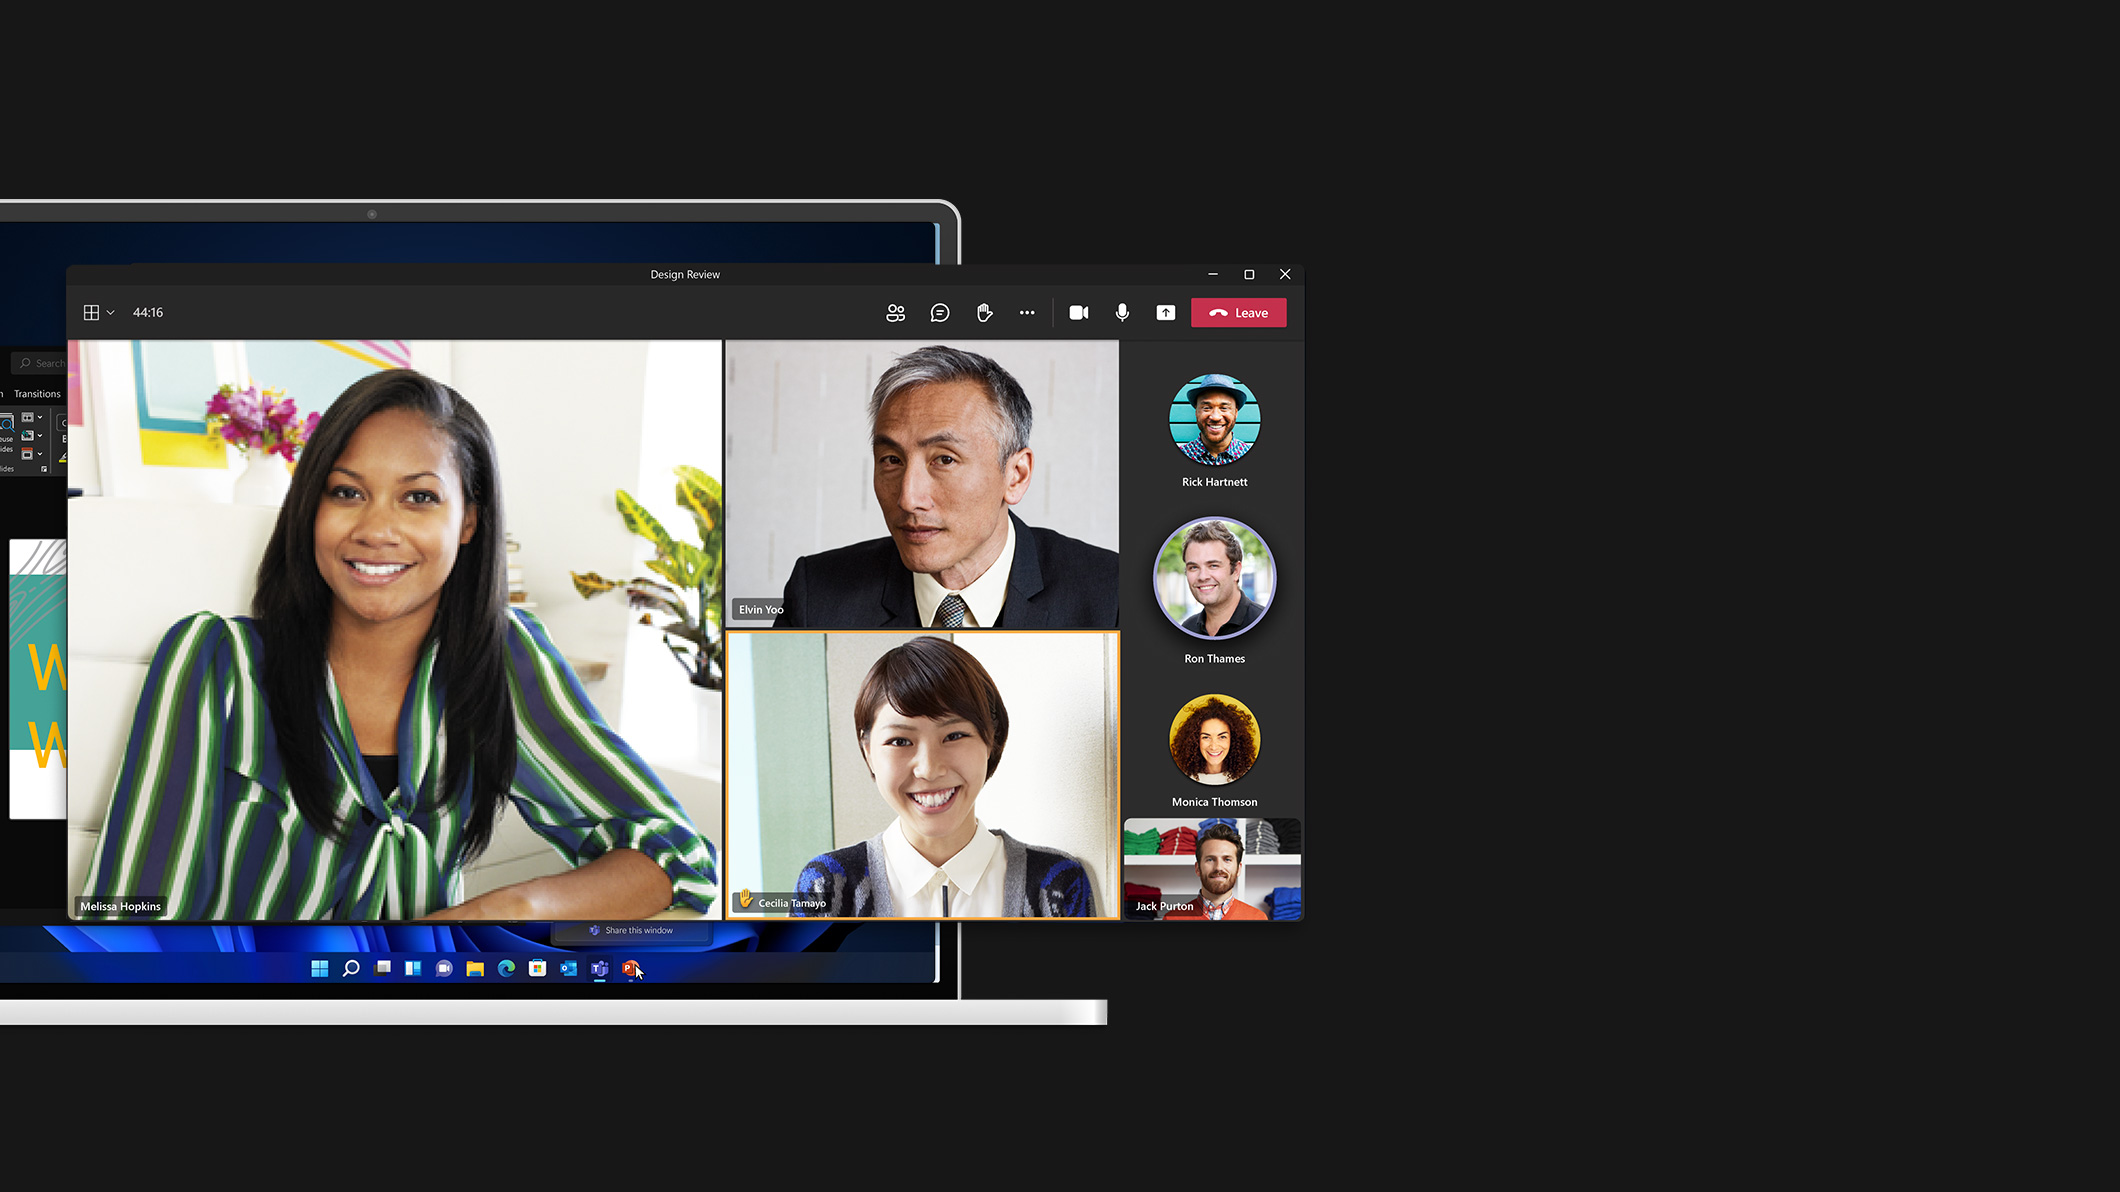 Zrzut ekranu z aplikacji Microsoft Teams z wyświetlonymi siedmioma osobami rozmawiającymi ze sobą